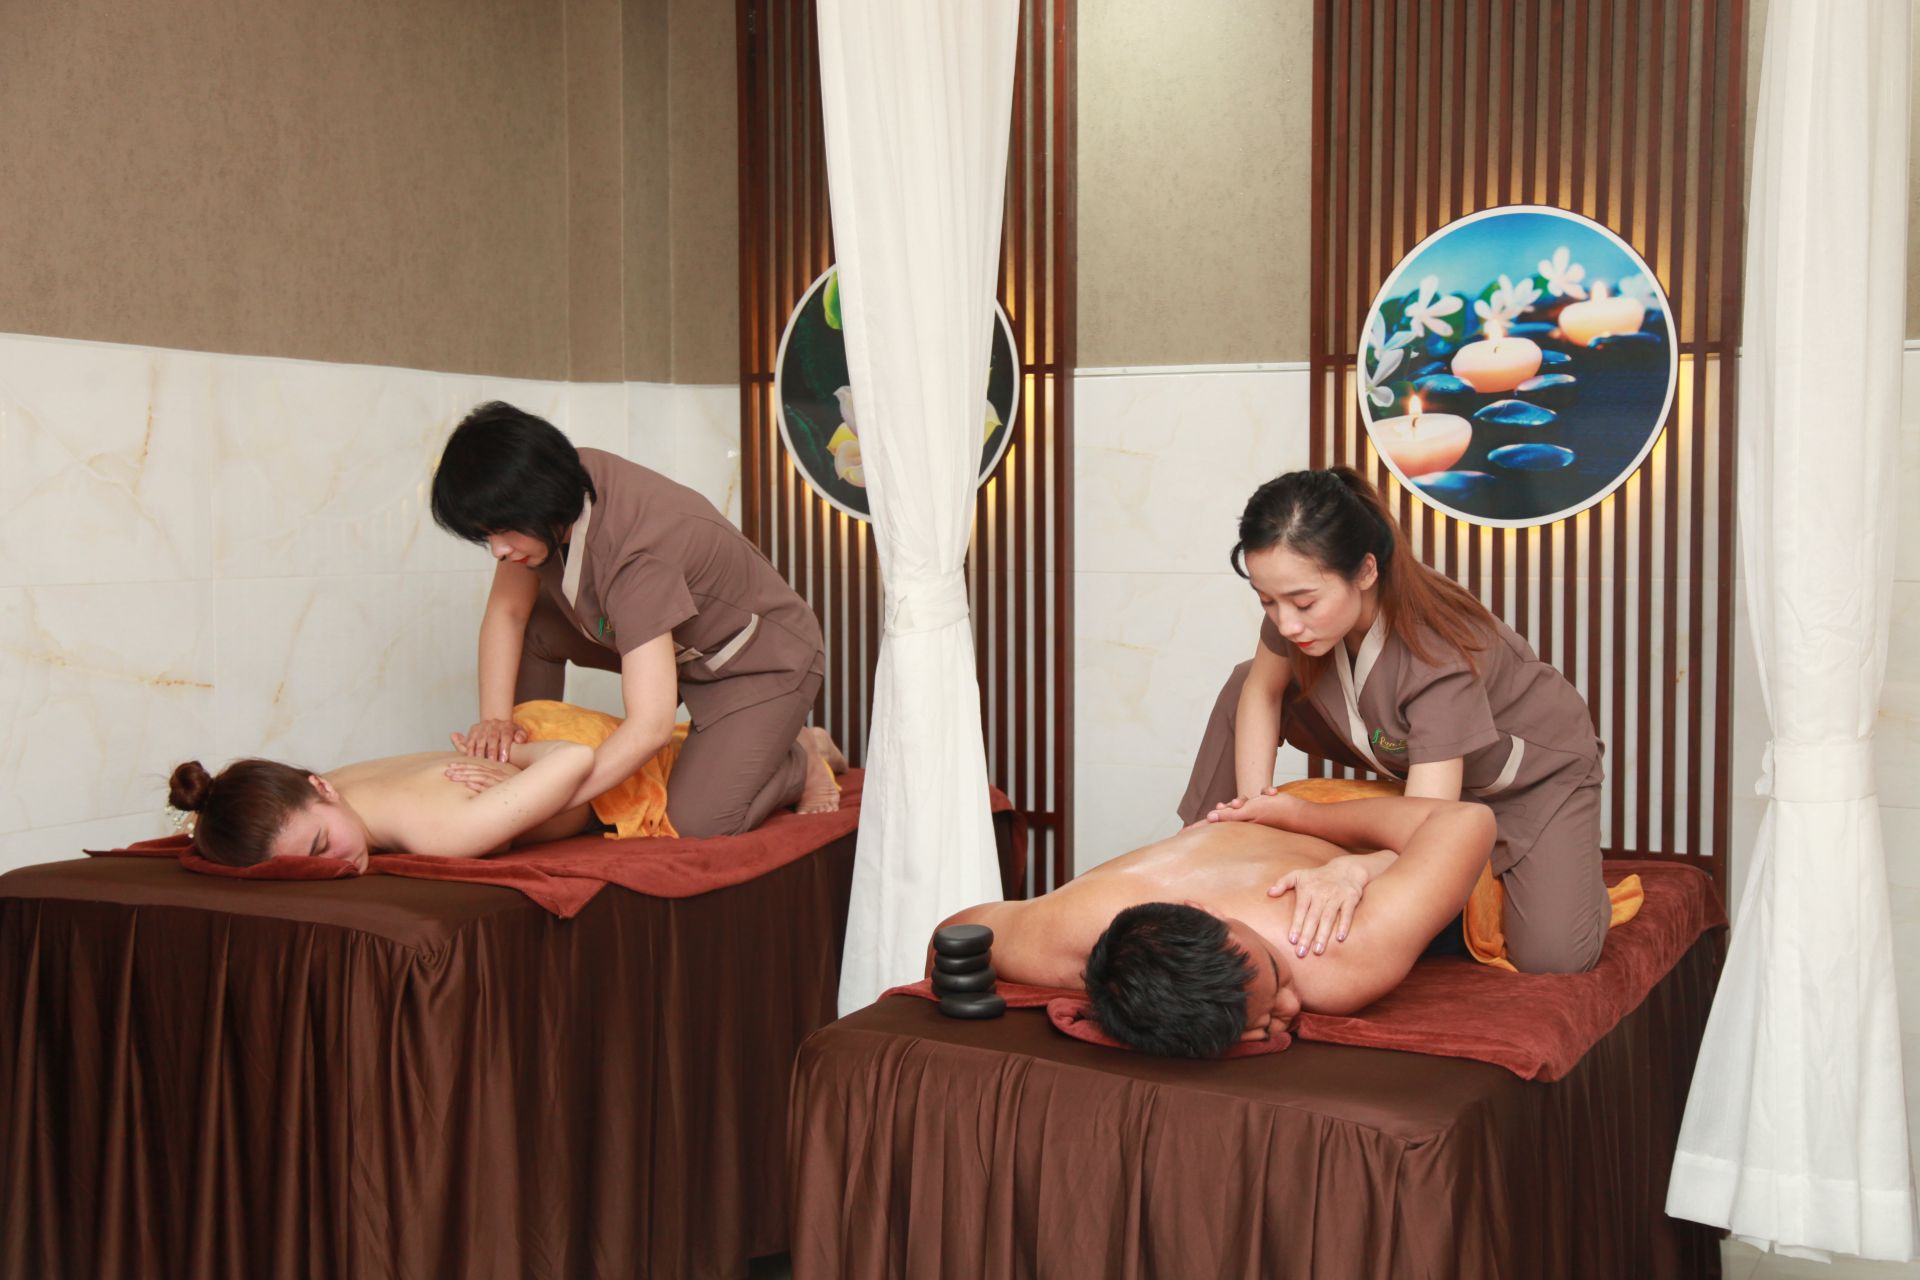 Massage cặp đôi - Cùng nhau thư giãn và giải tỏa căng thẳng